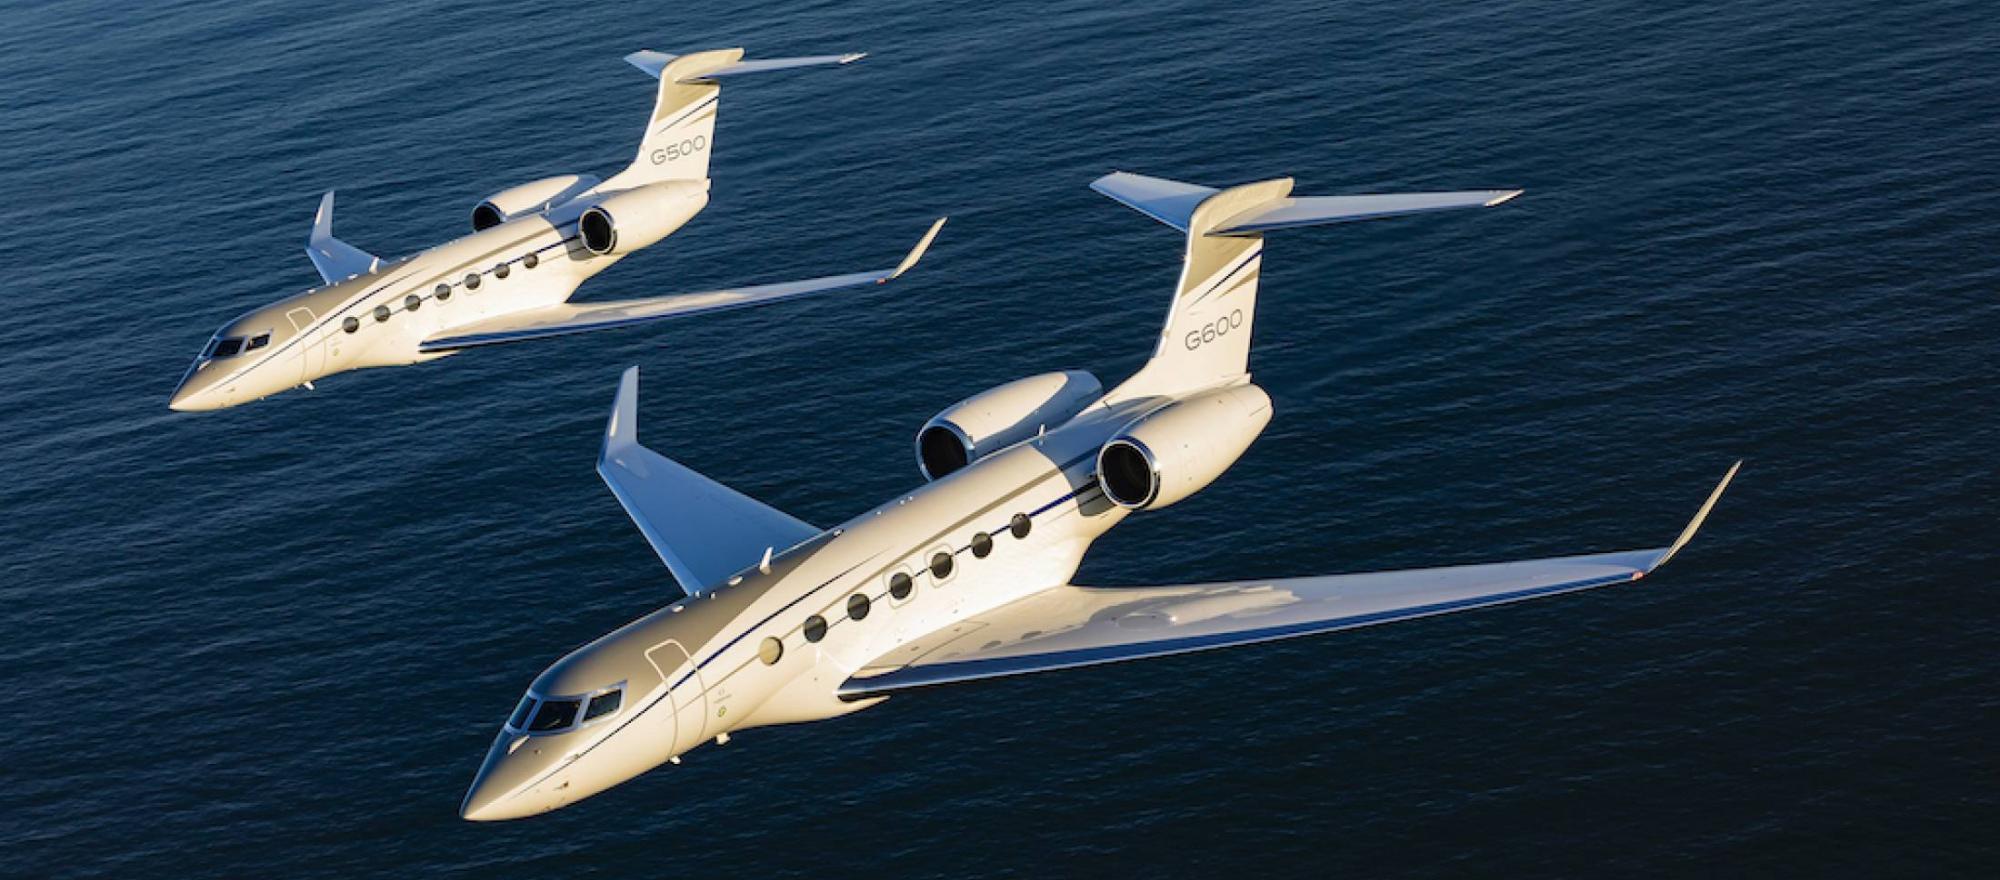 G500/G600 (Photo: Gulfstream Aerospace)